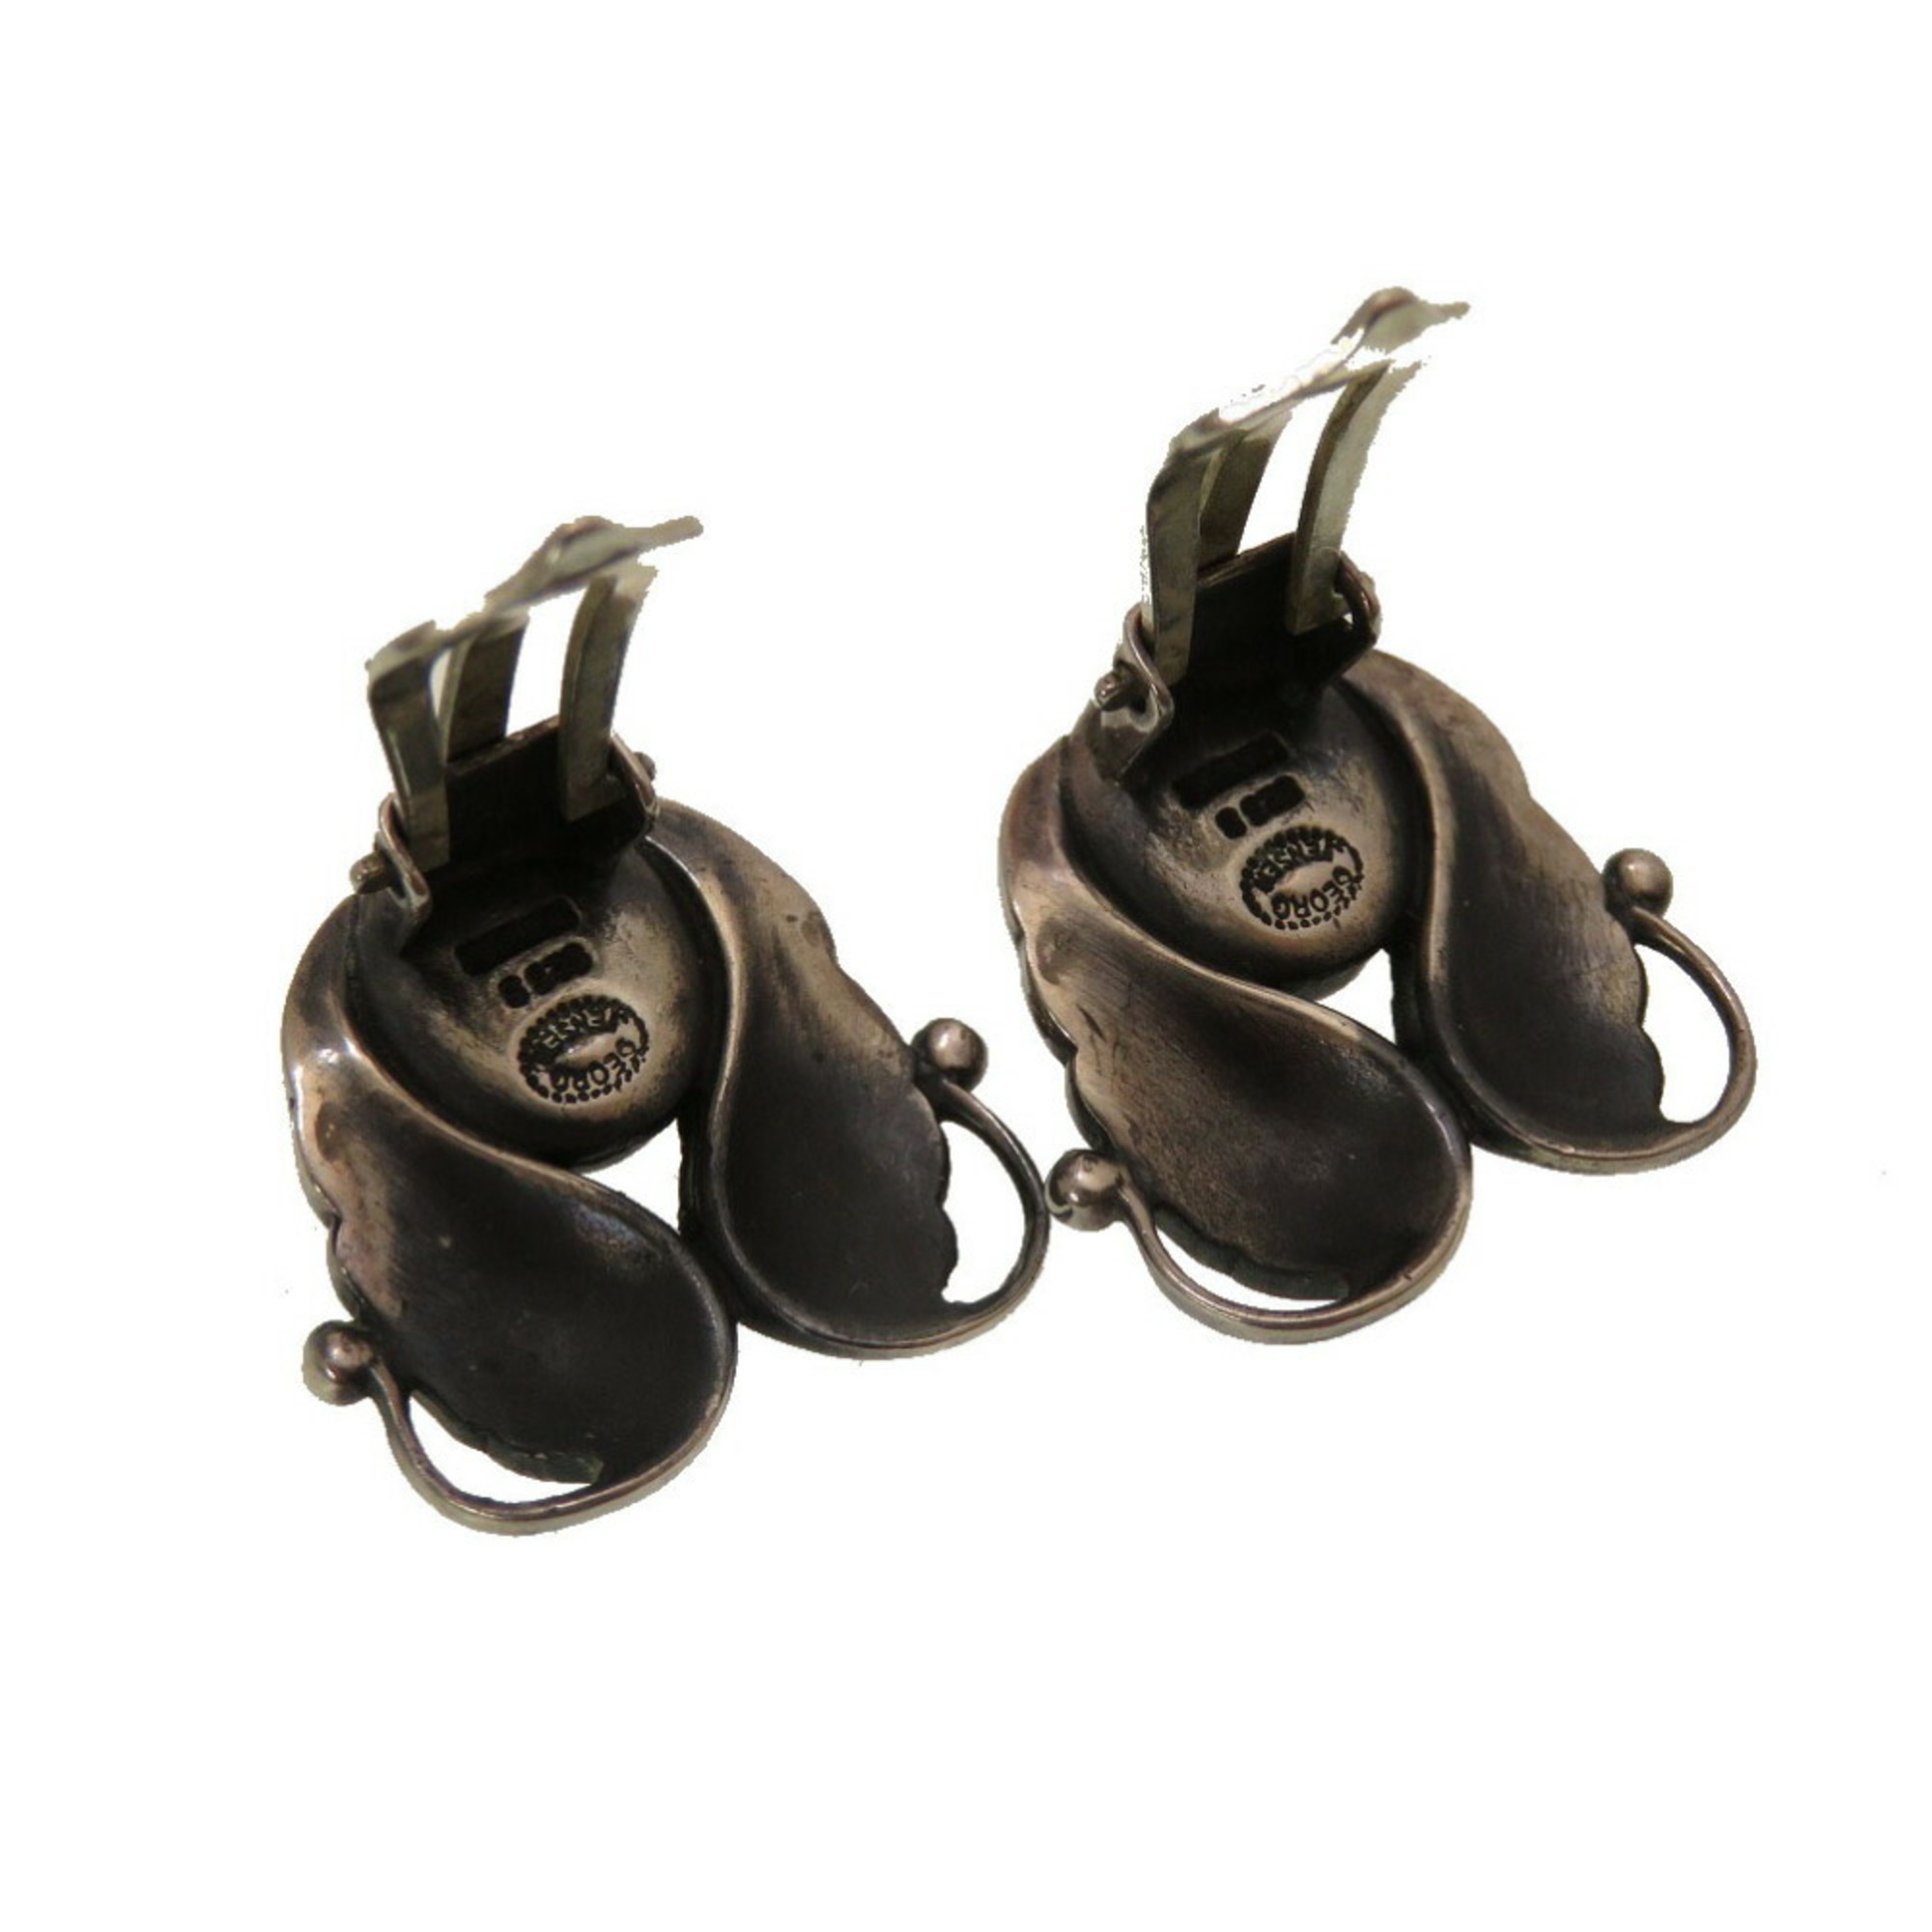 Georg Jensen silver 925 earrings